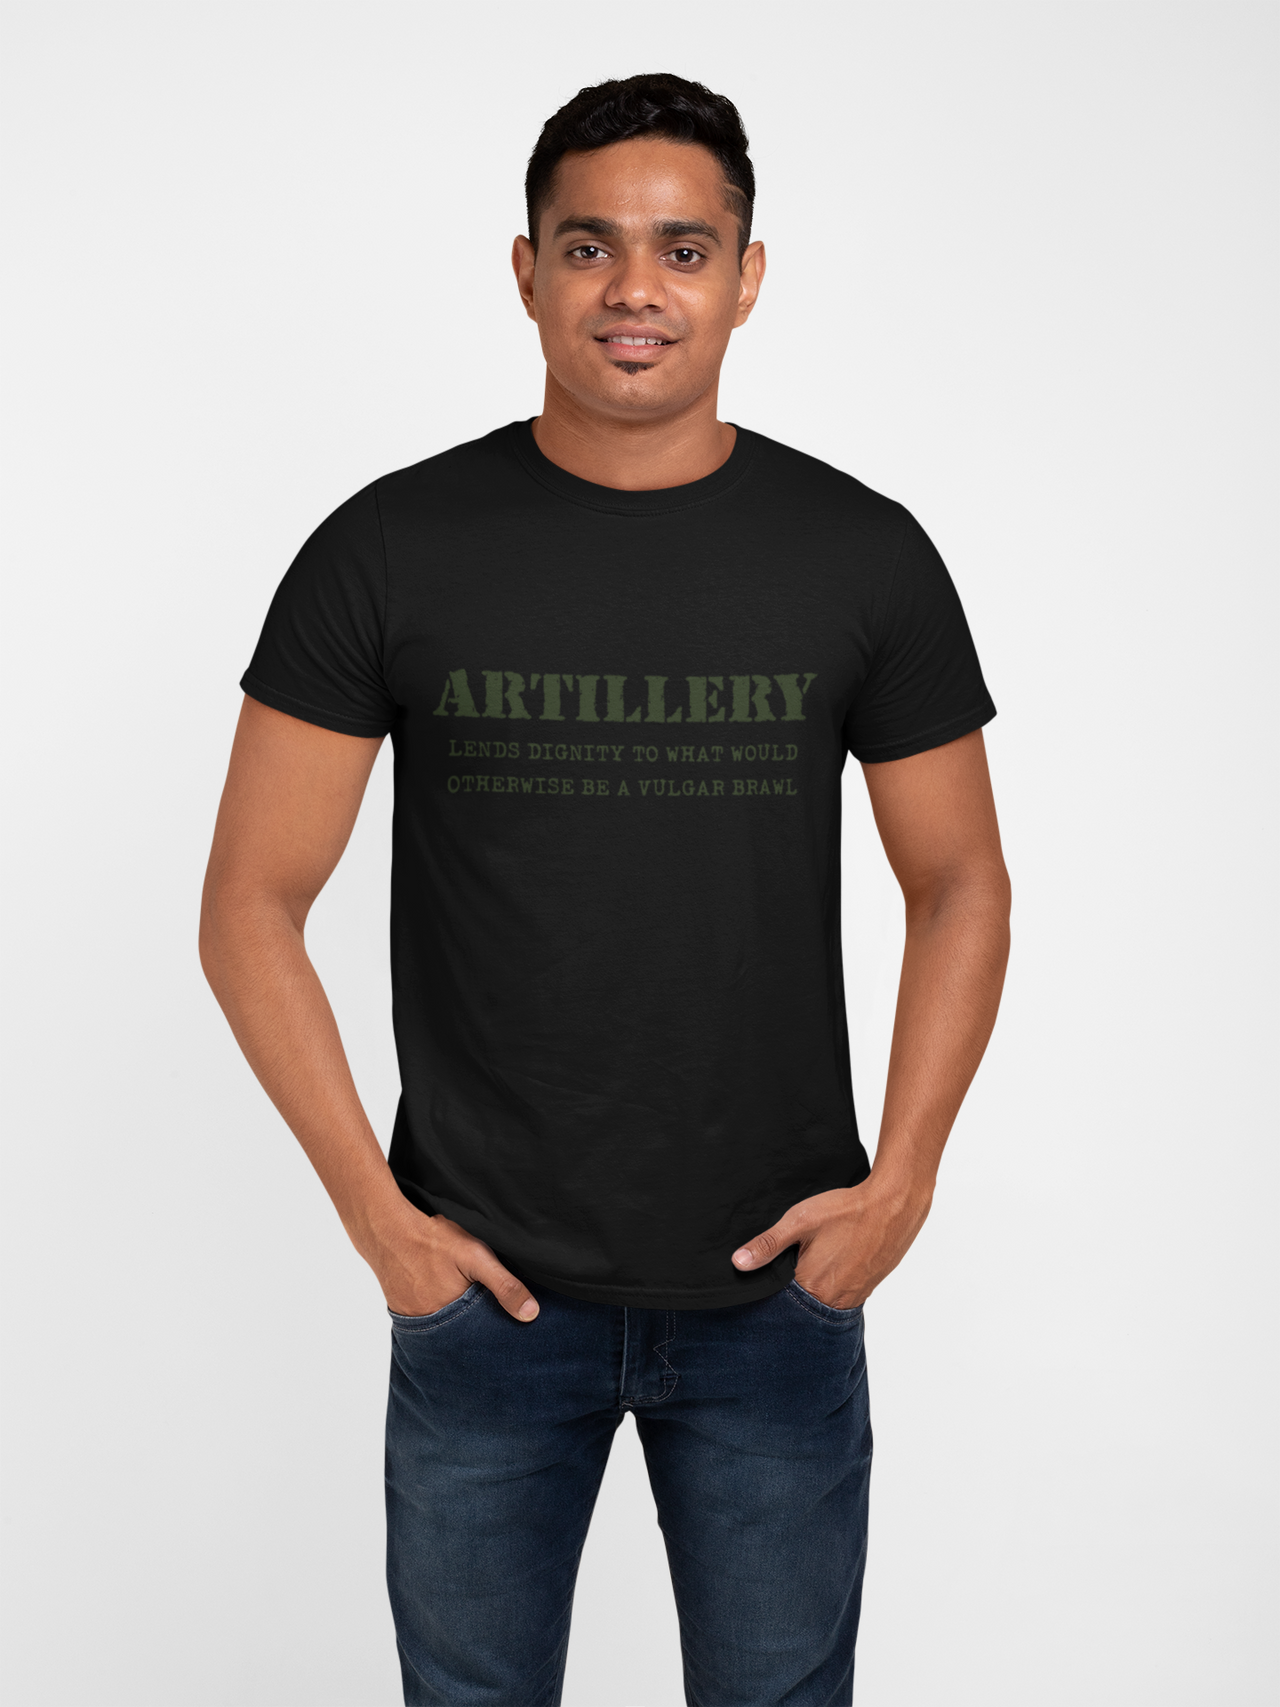 Artillery T-shirt - Lends Dignity..... (Men)